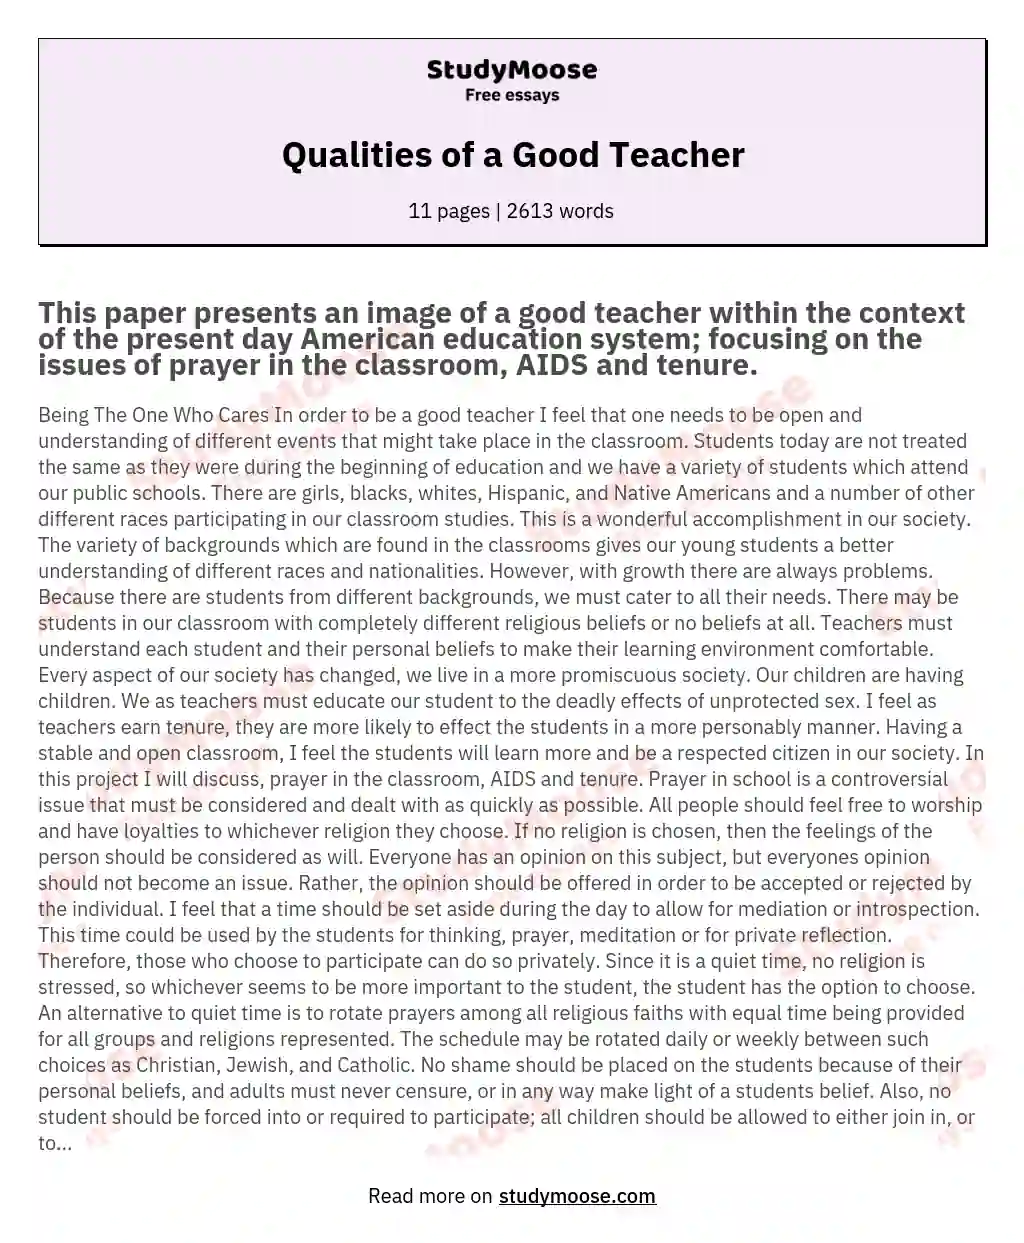 50 qualities of a good teacher essay